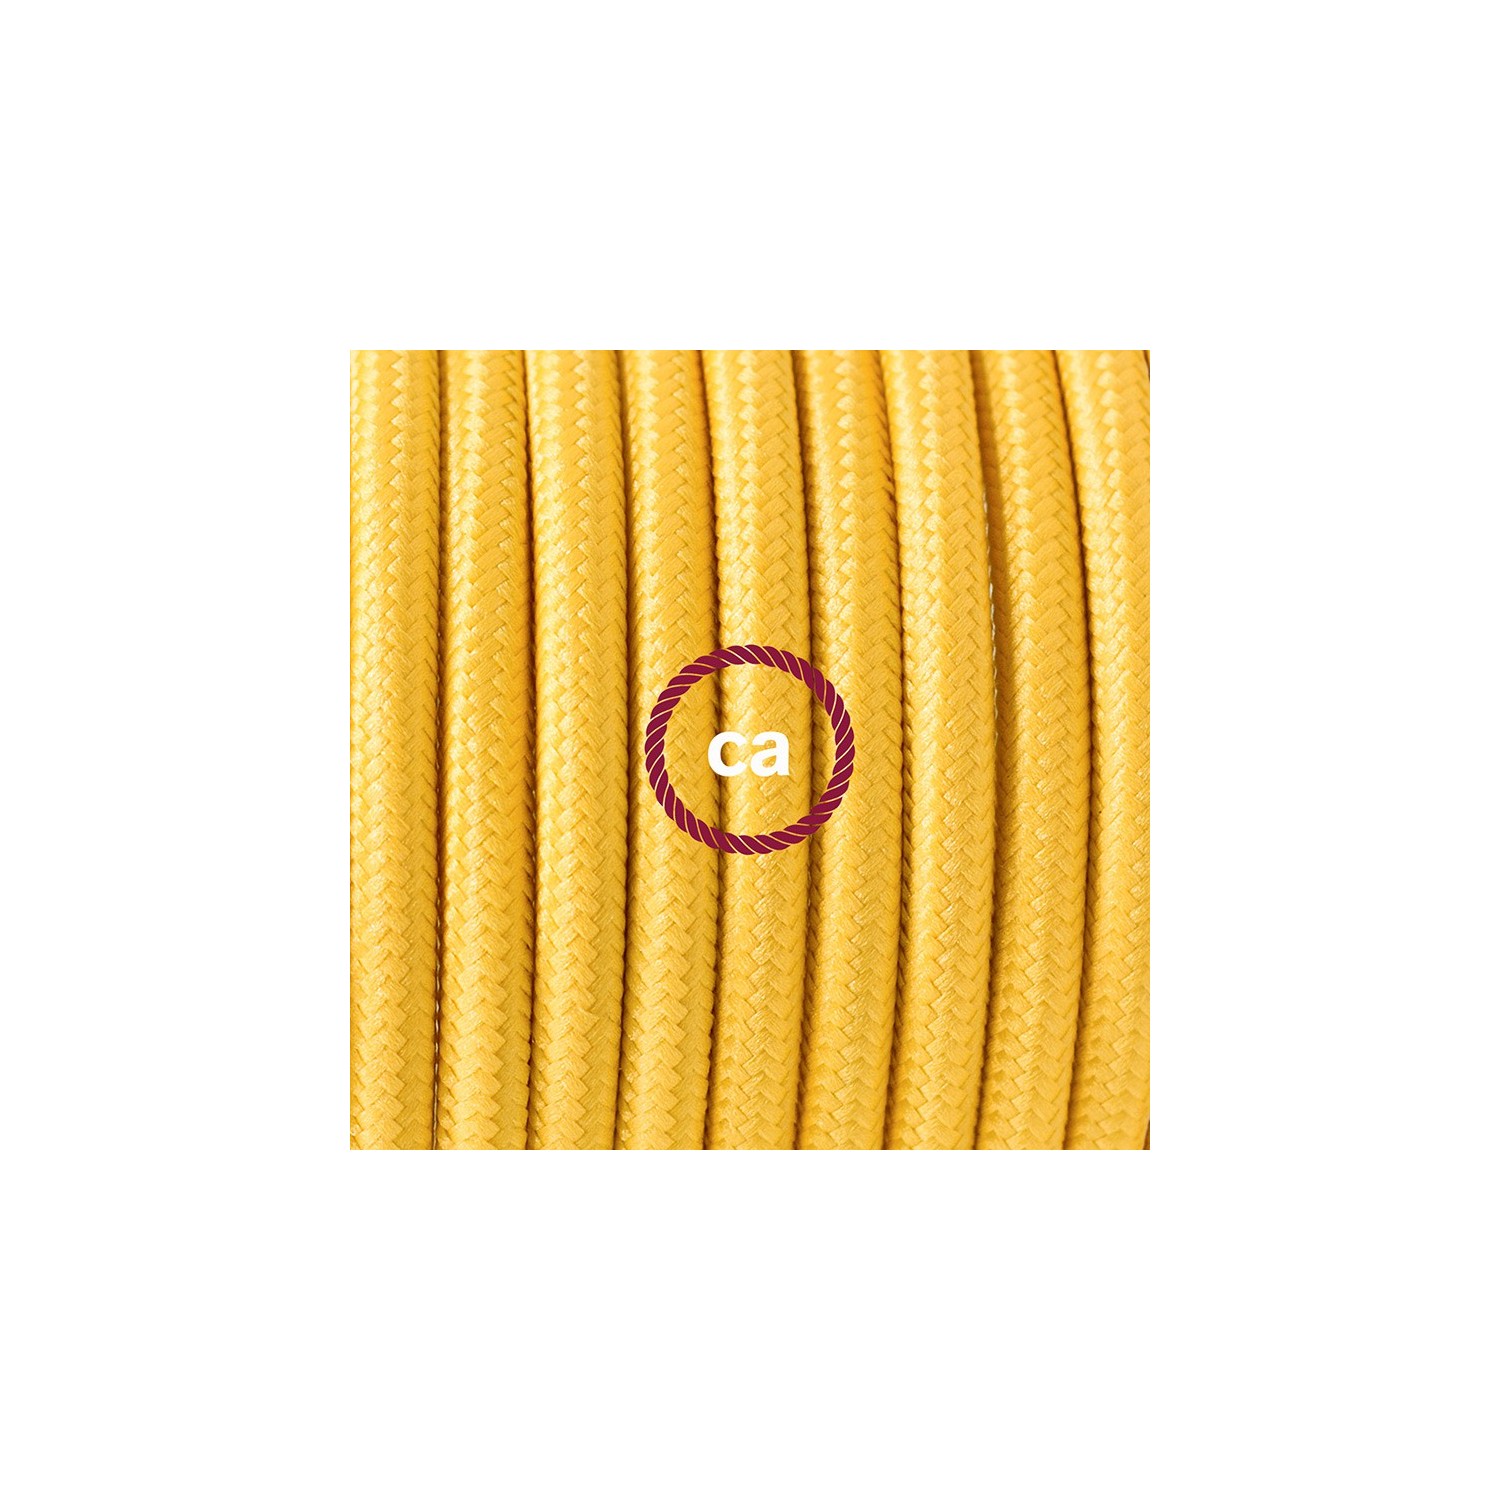 Ronde flexibele textielkabel van viscose met schakelaar en stekker. RM10 - geel 1,80 m.